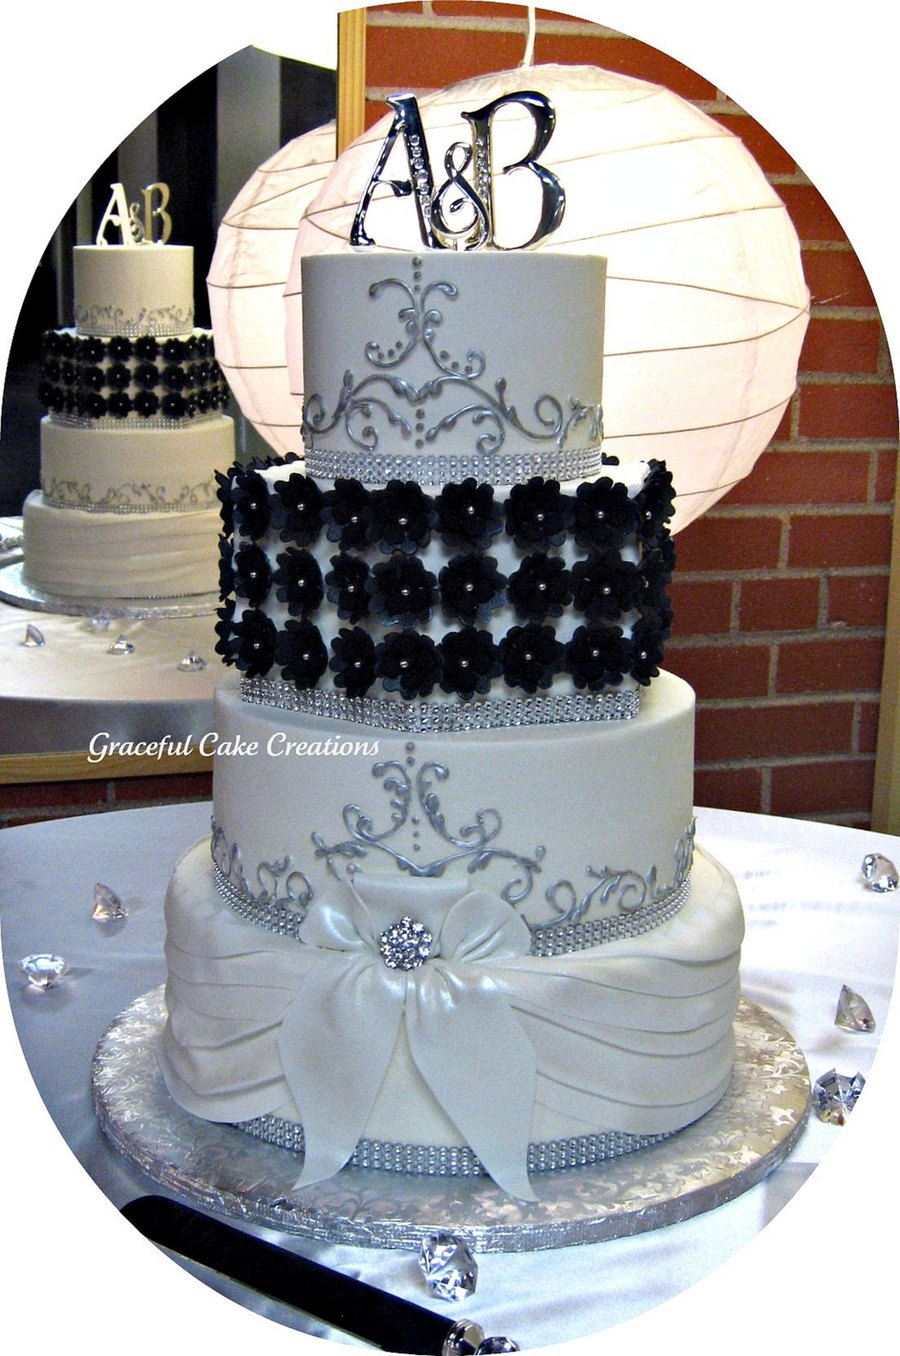 Elegant Black and White Wedding Cake